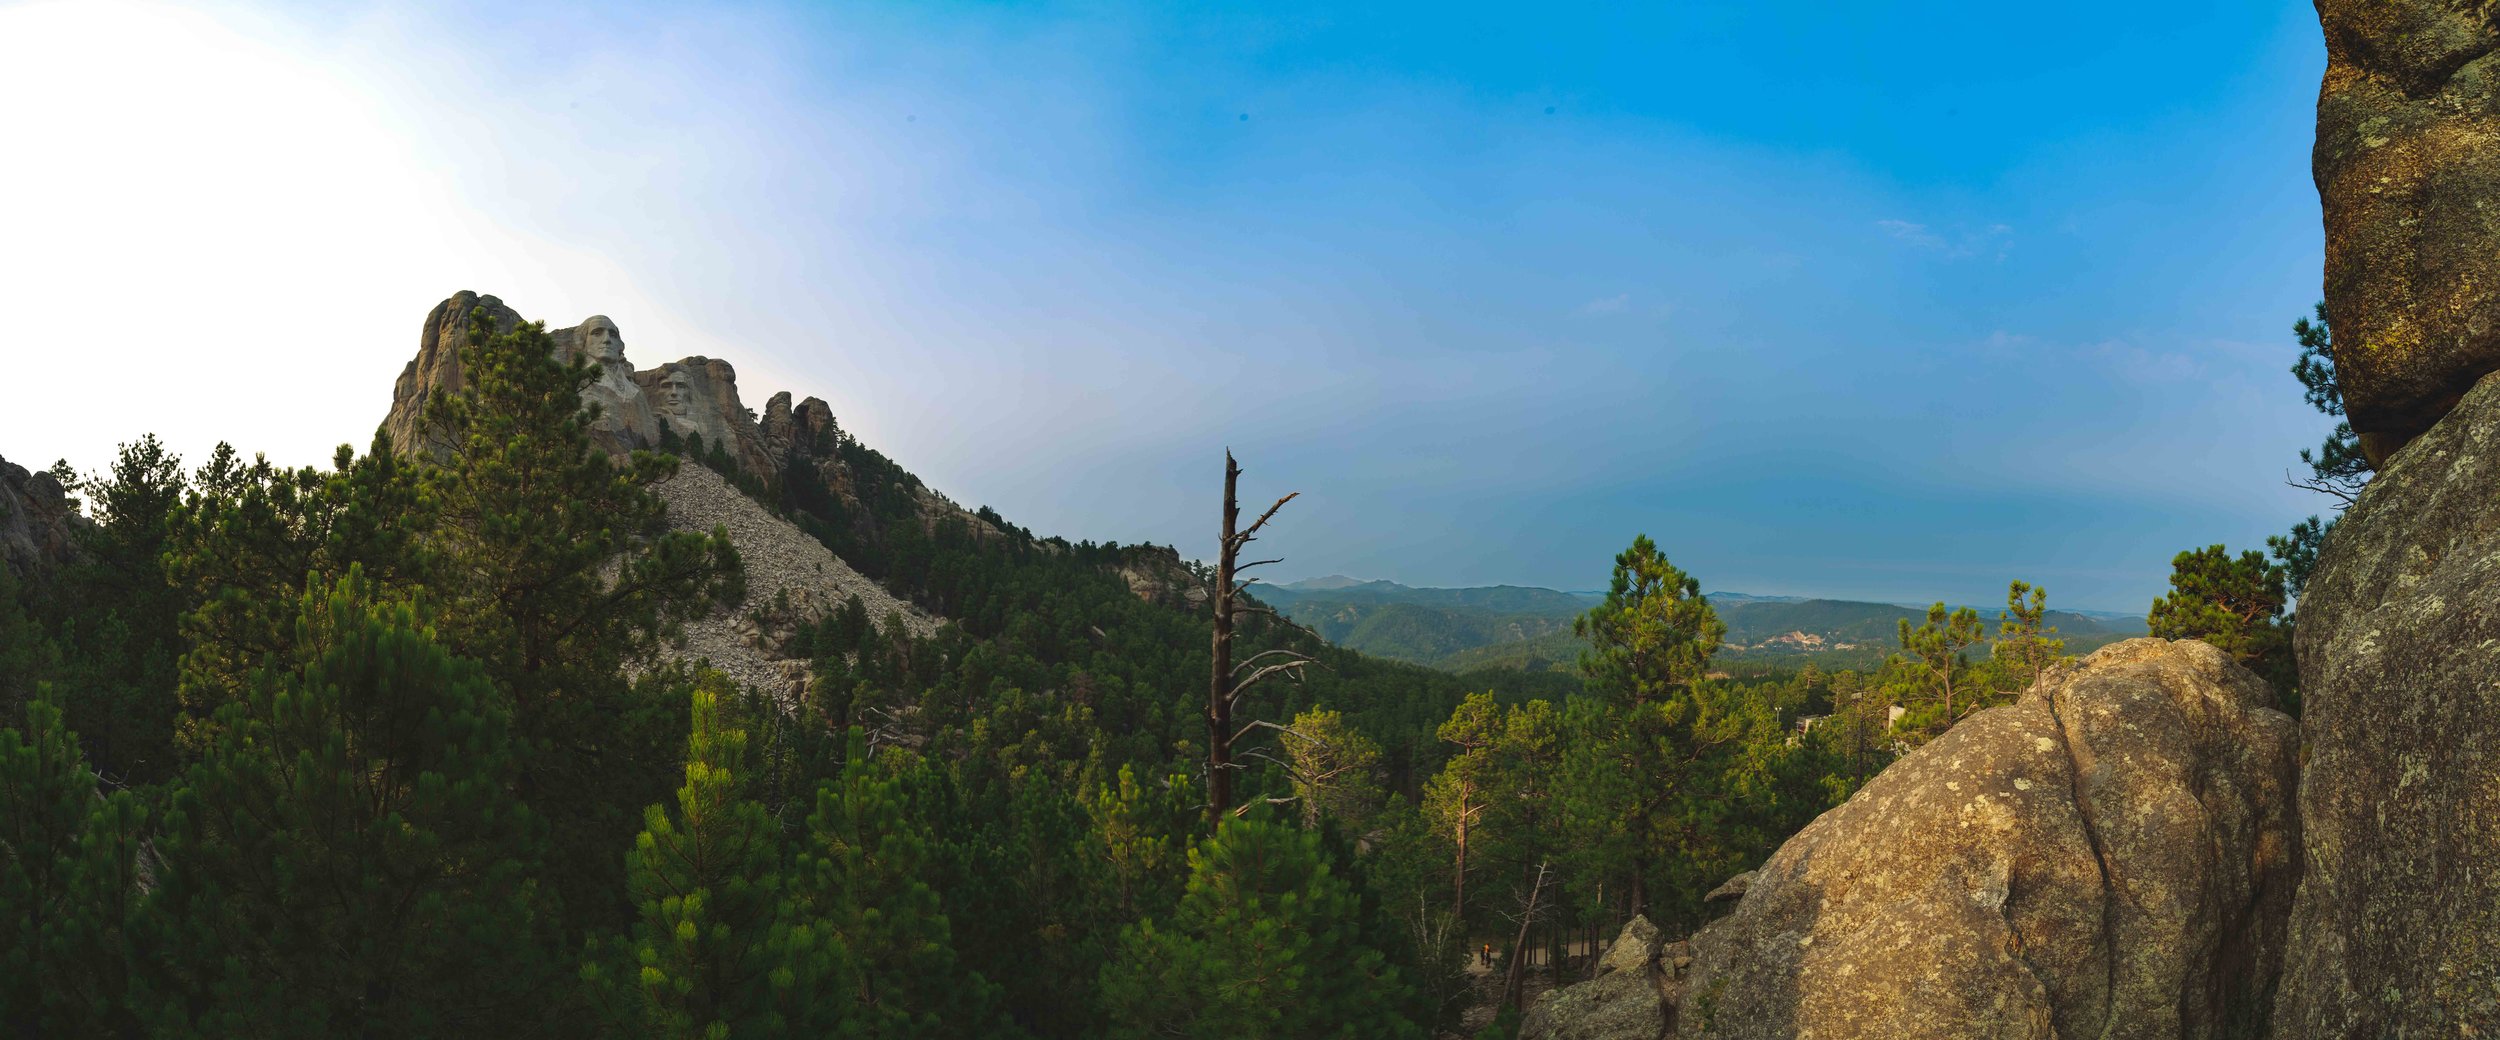 Mount Rushmore-10.jpg